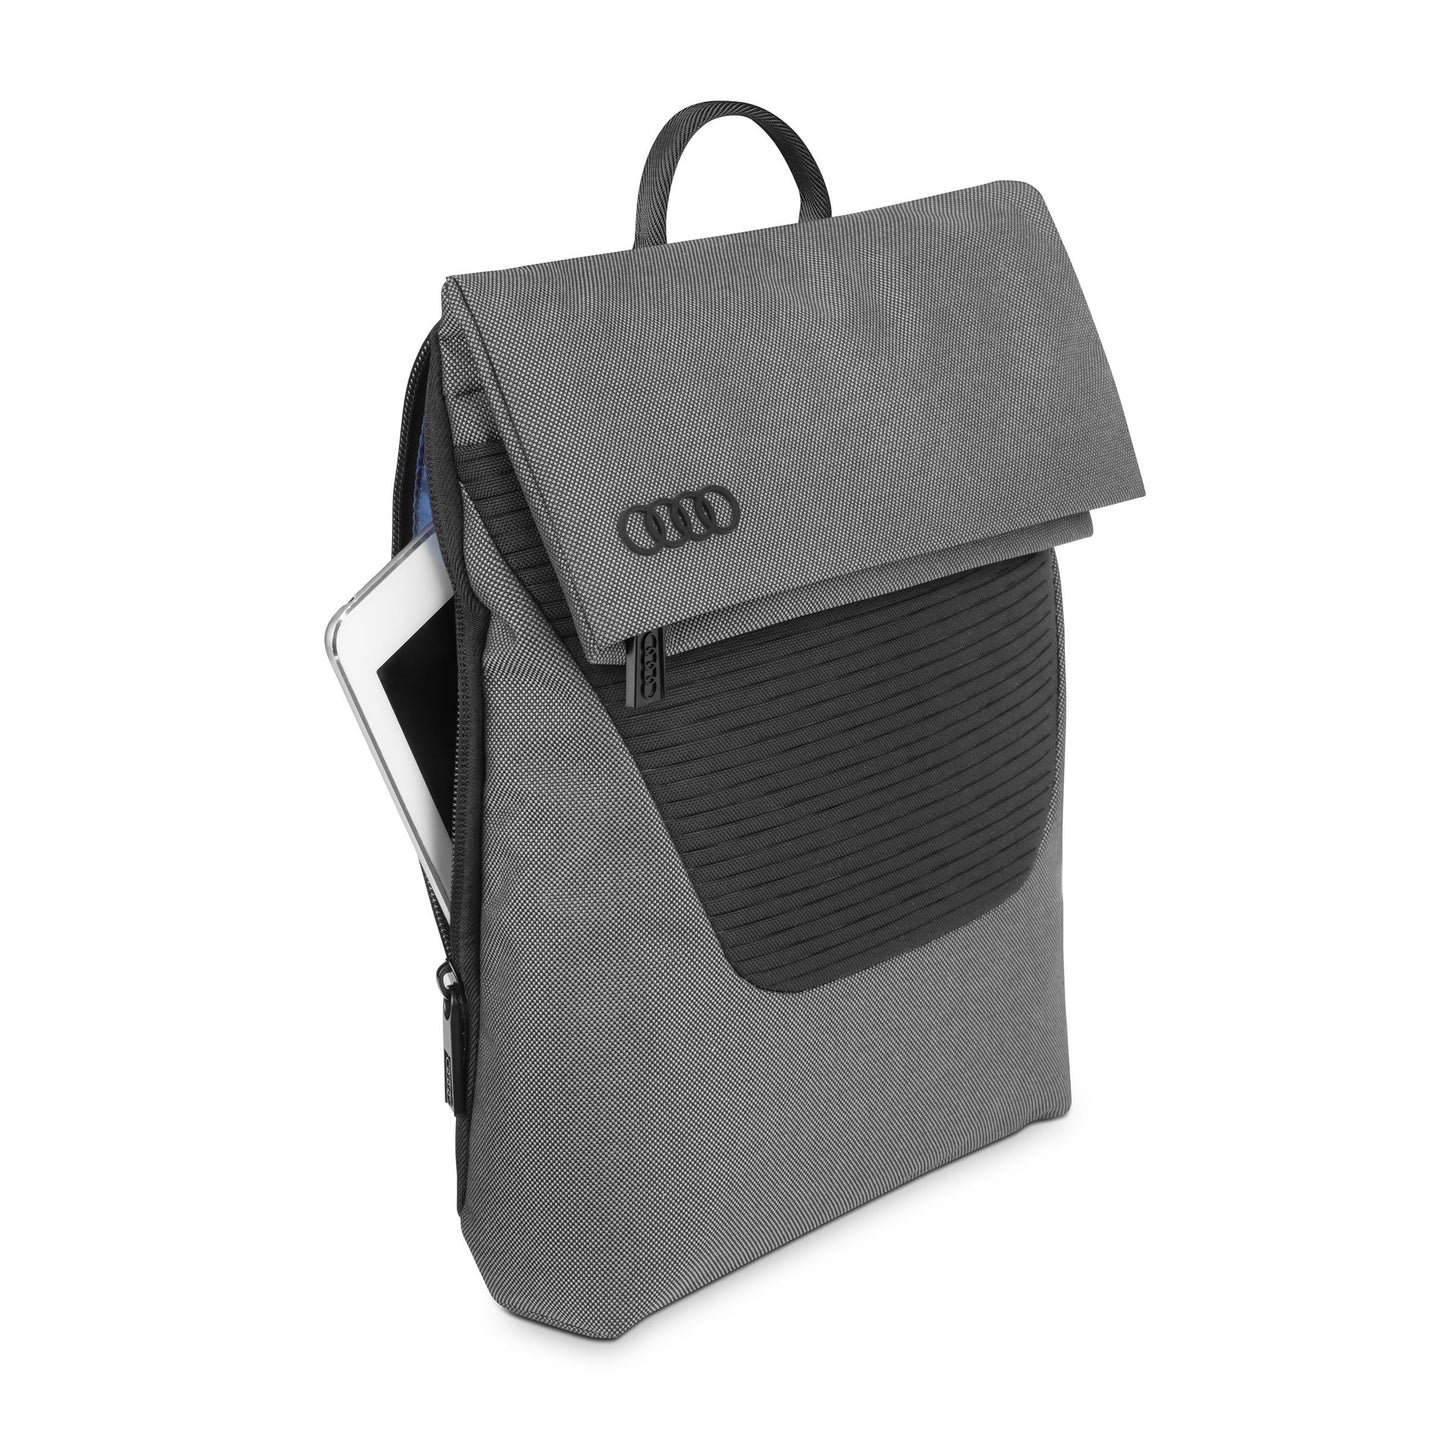 Audi Shoulder bag, grey-black